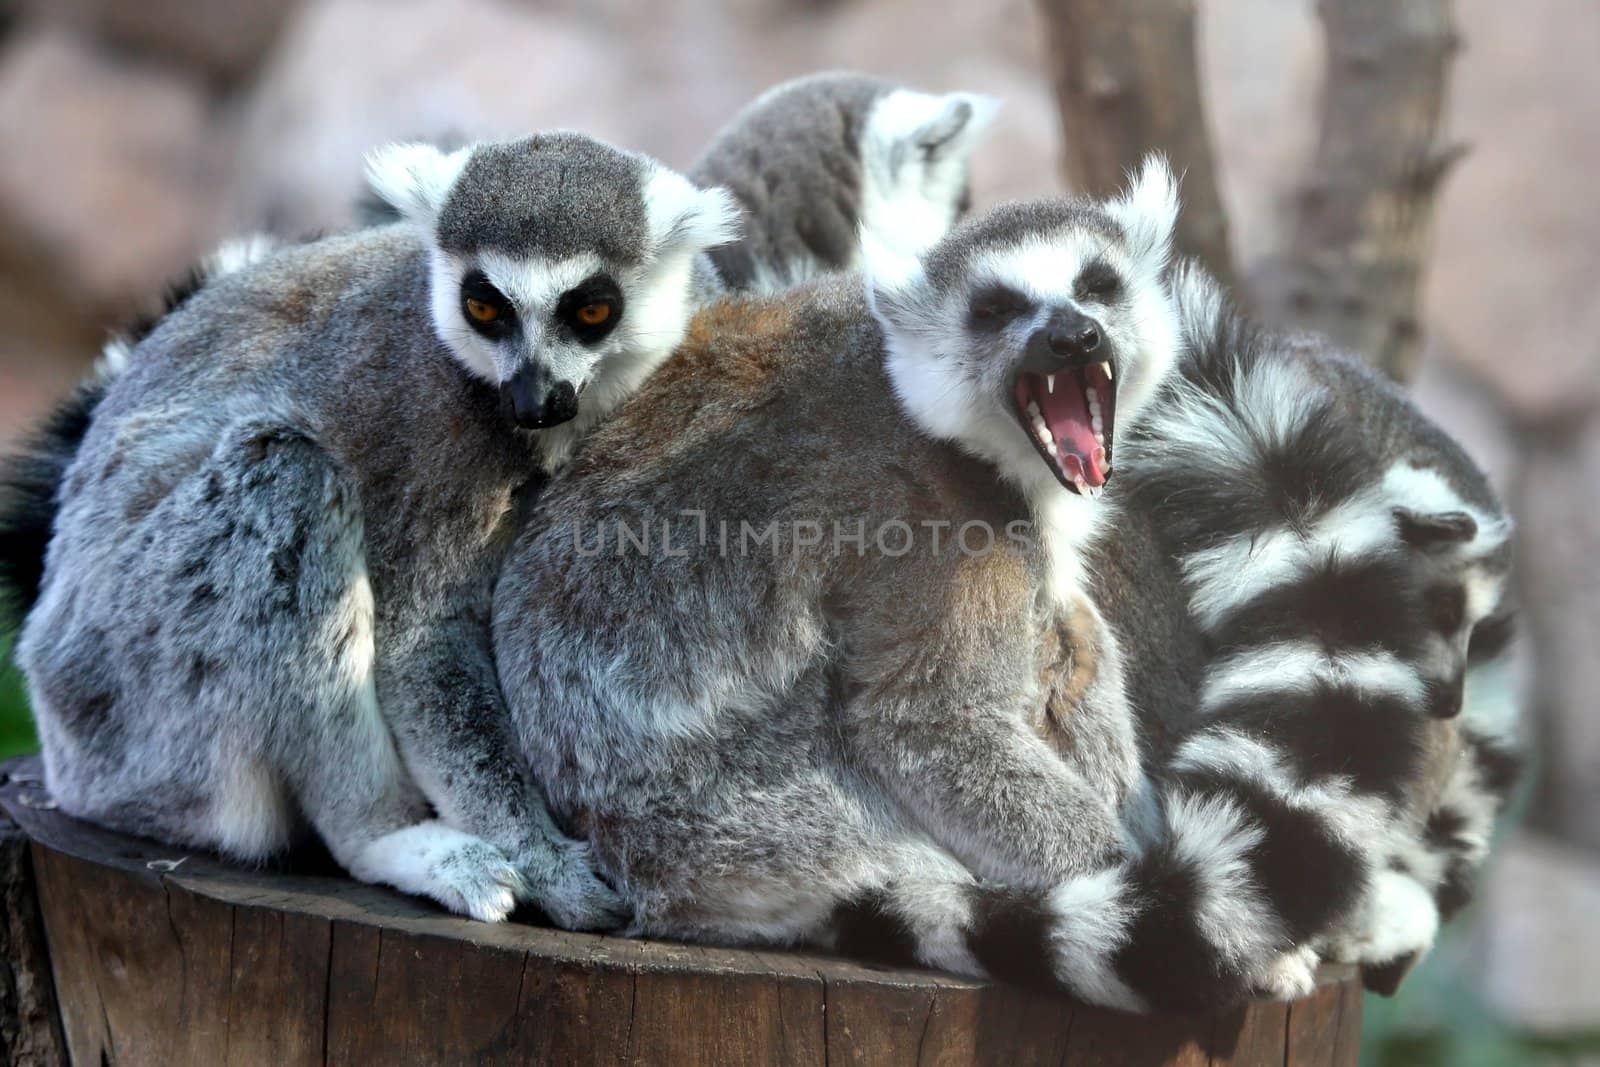 Lemur family huddled together with one yawning